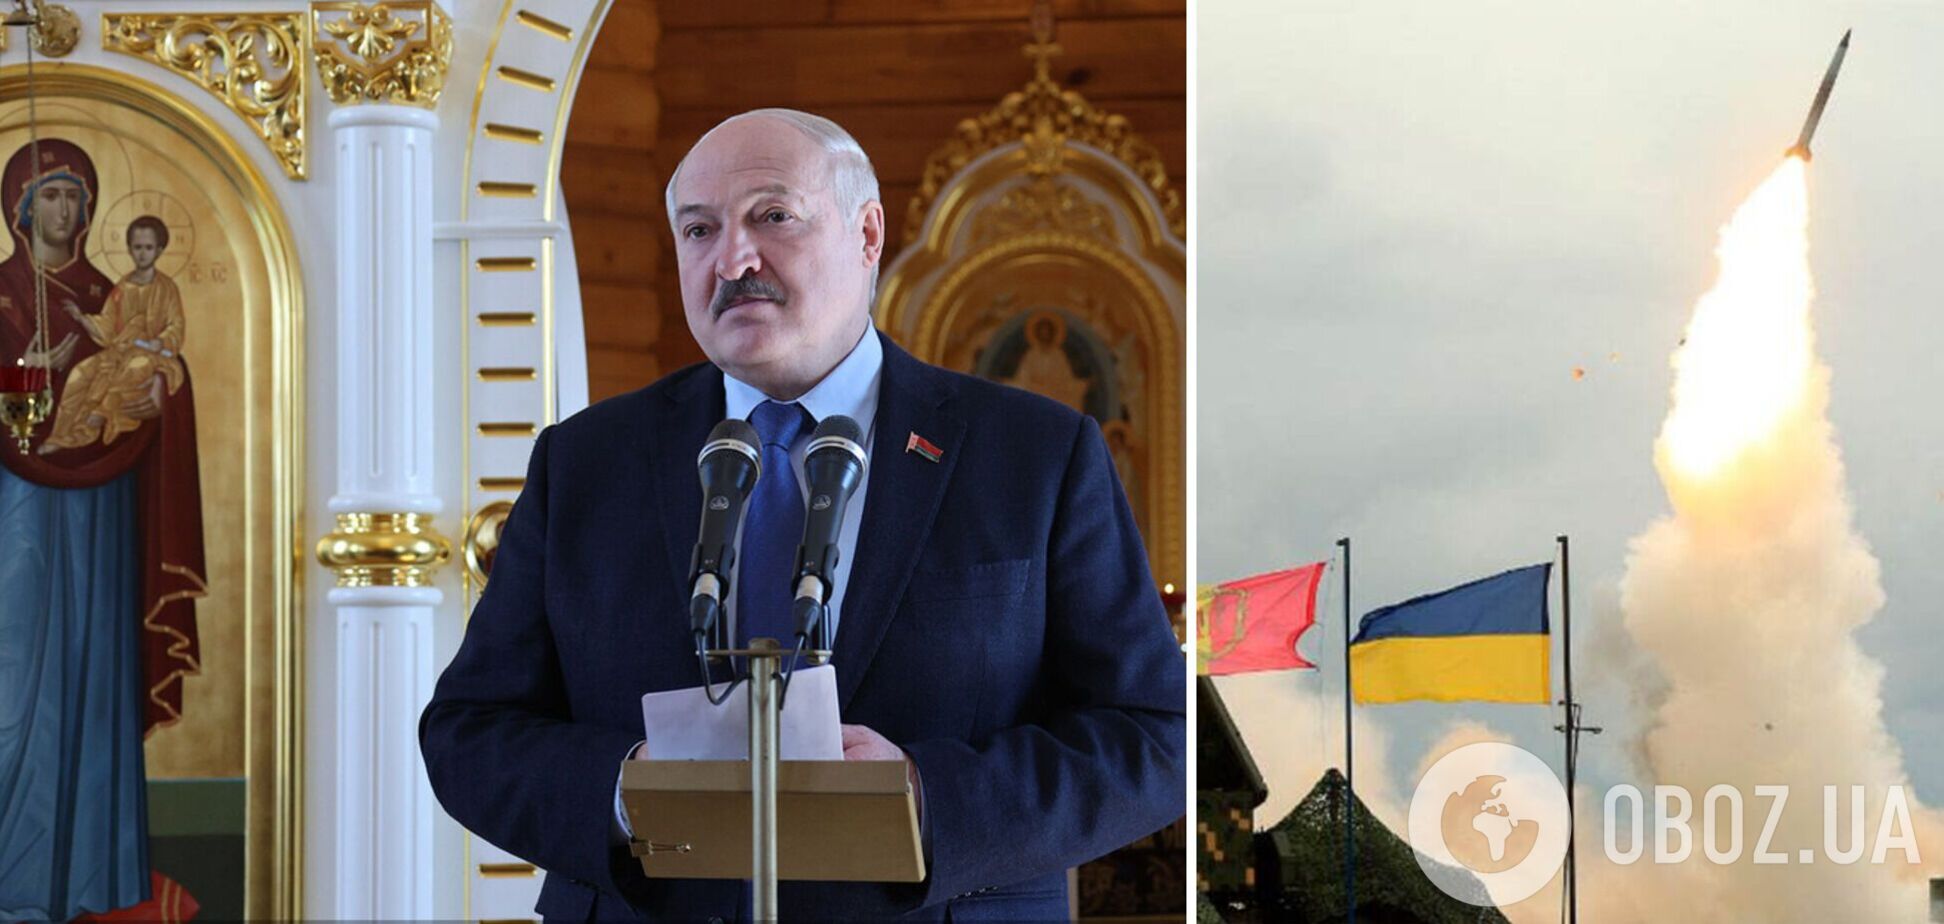 Лукашенко призвал соседей 'жить дружно', но с территории Беларуси бомбят Украину. Видео